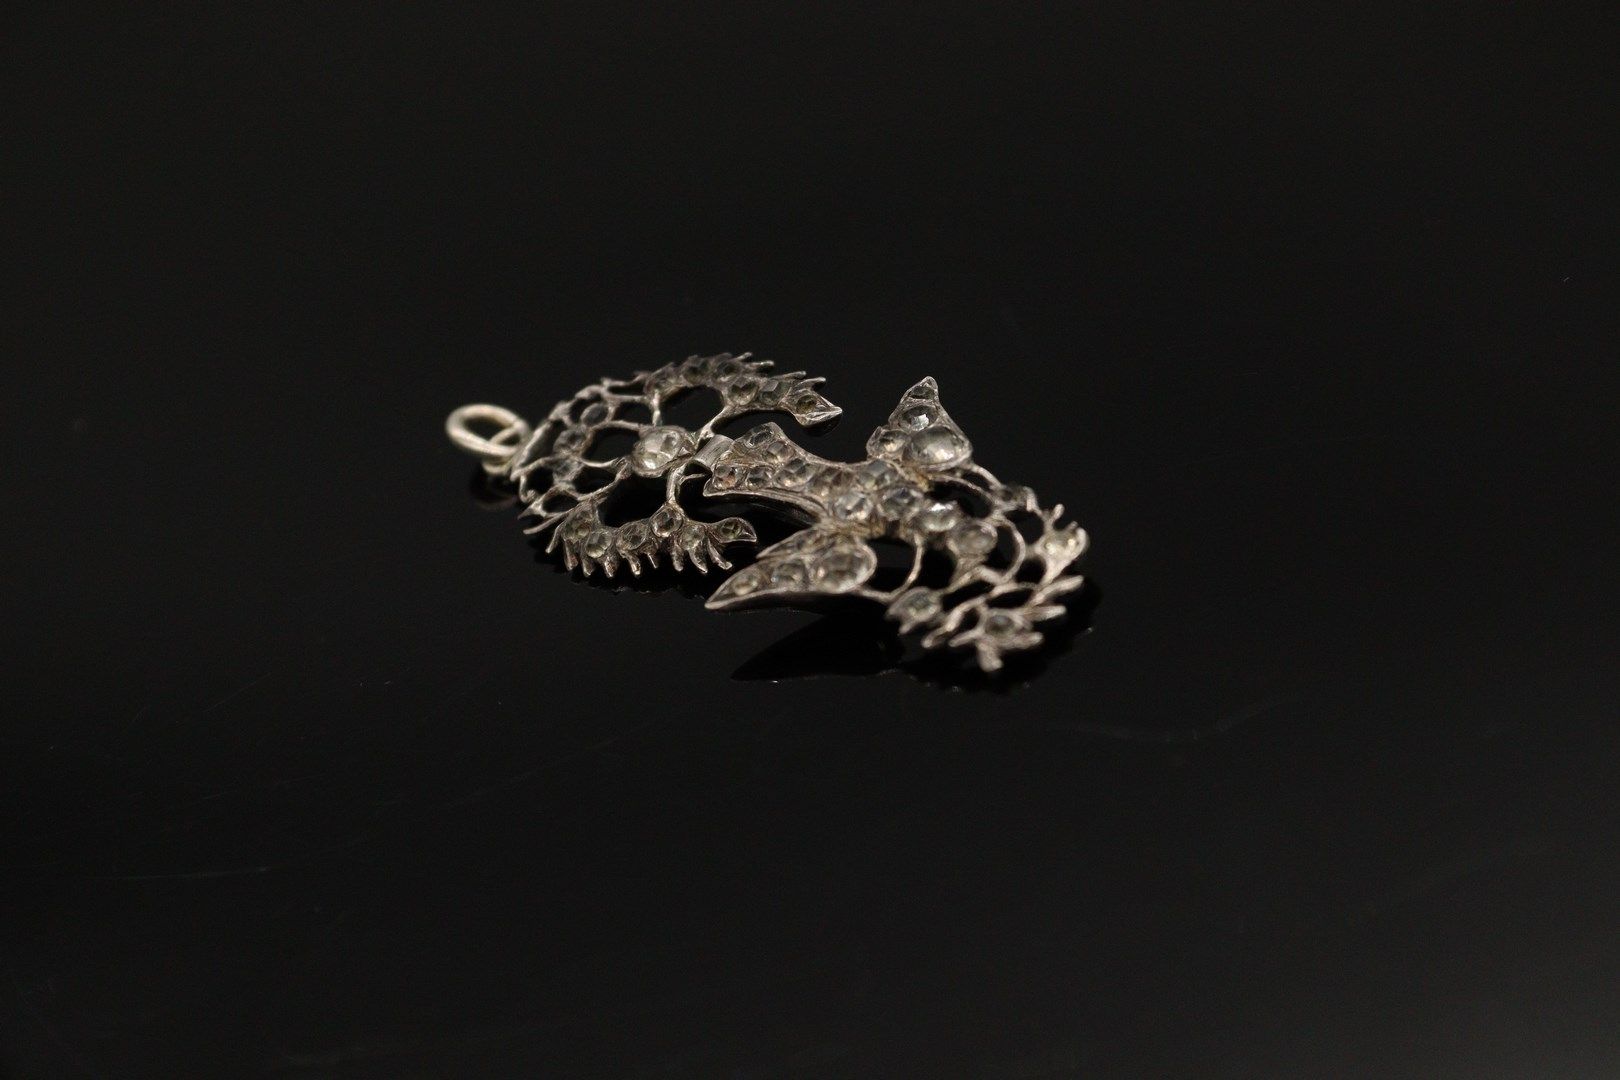 Null 银质（800）"诺曼底的圣灵 "胸针-吊坠，装饰有白色水钻，由一只被打结的丝带牵着的鸽子组成，嘴里叼着一根树枝。

以野猪为标记。

长度：7厘米。
&hellip;